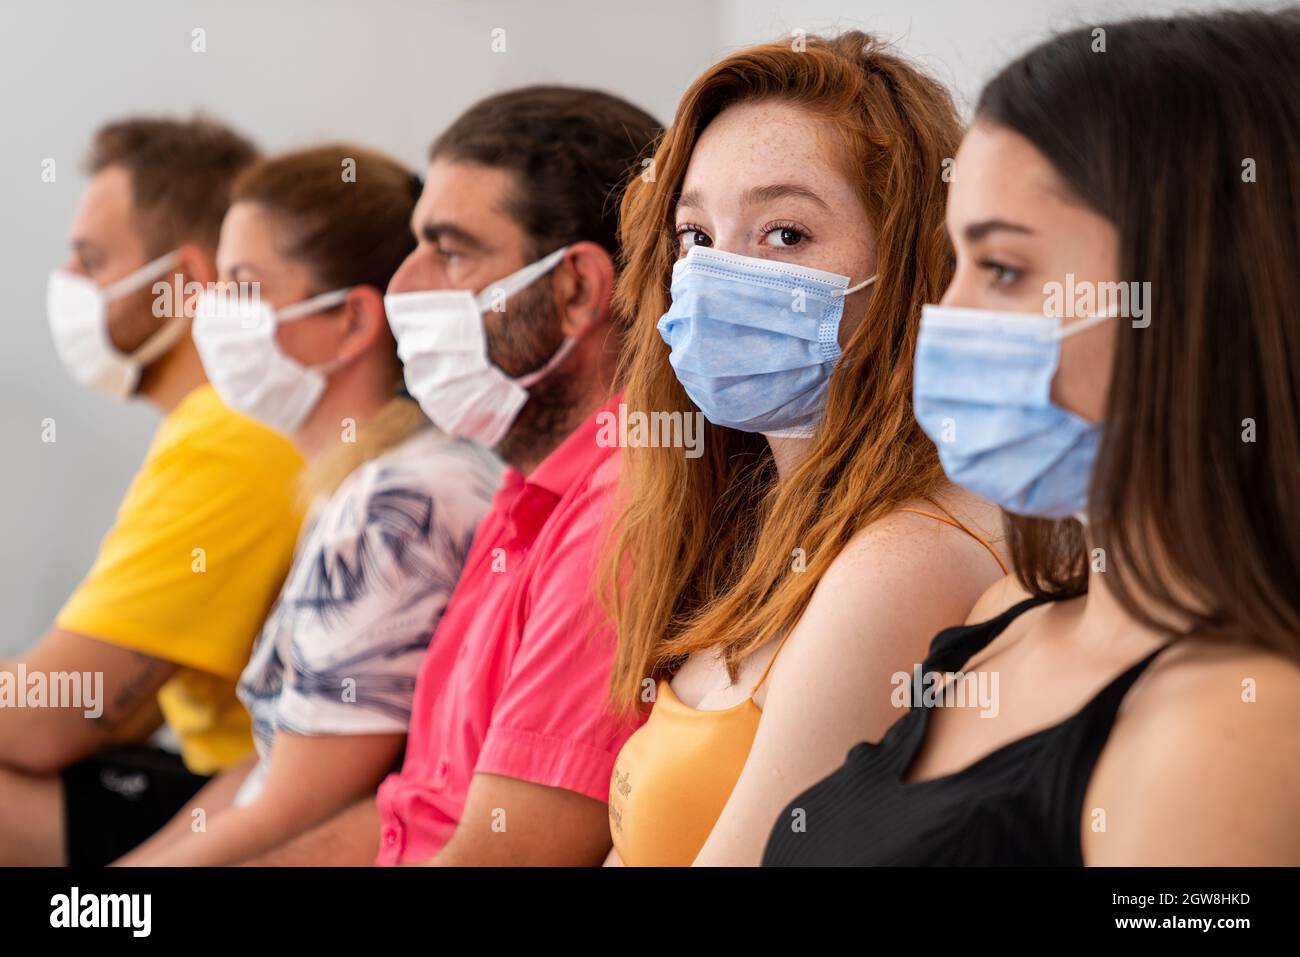 Groupe de personnes est assis et attend dans un hall avec masque facial protecteur à distance sociale. Pandémie et concept de soins de santé. Photo de haute qualité Banque D'Images